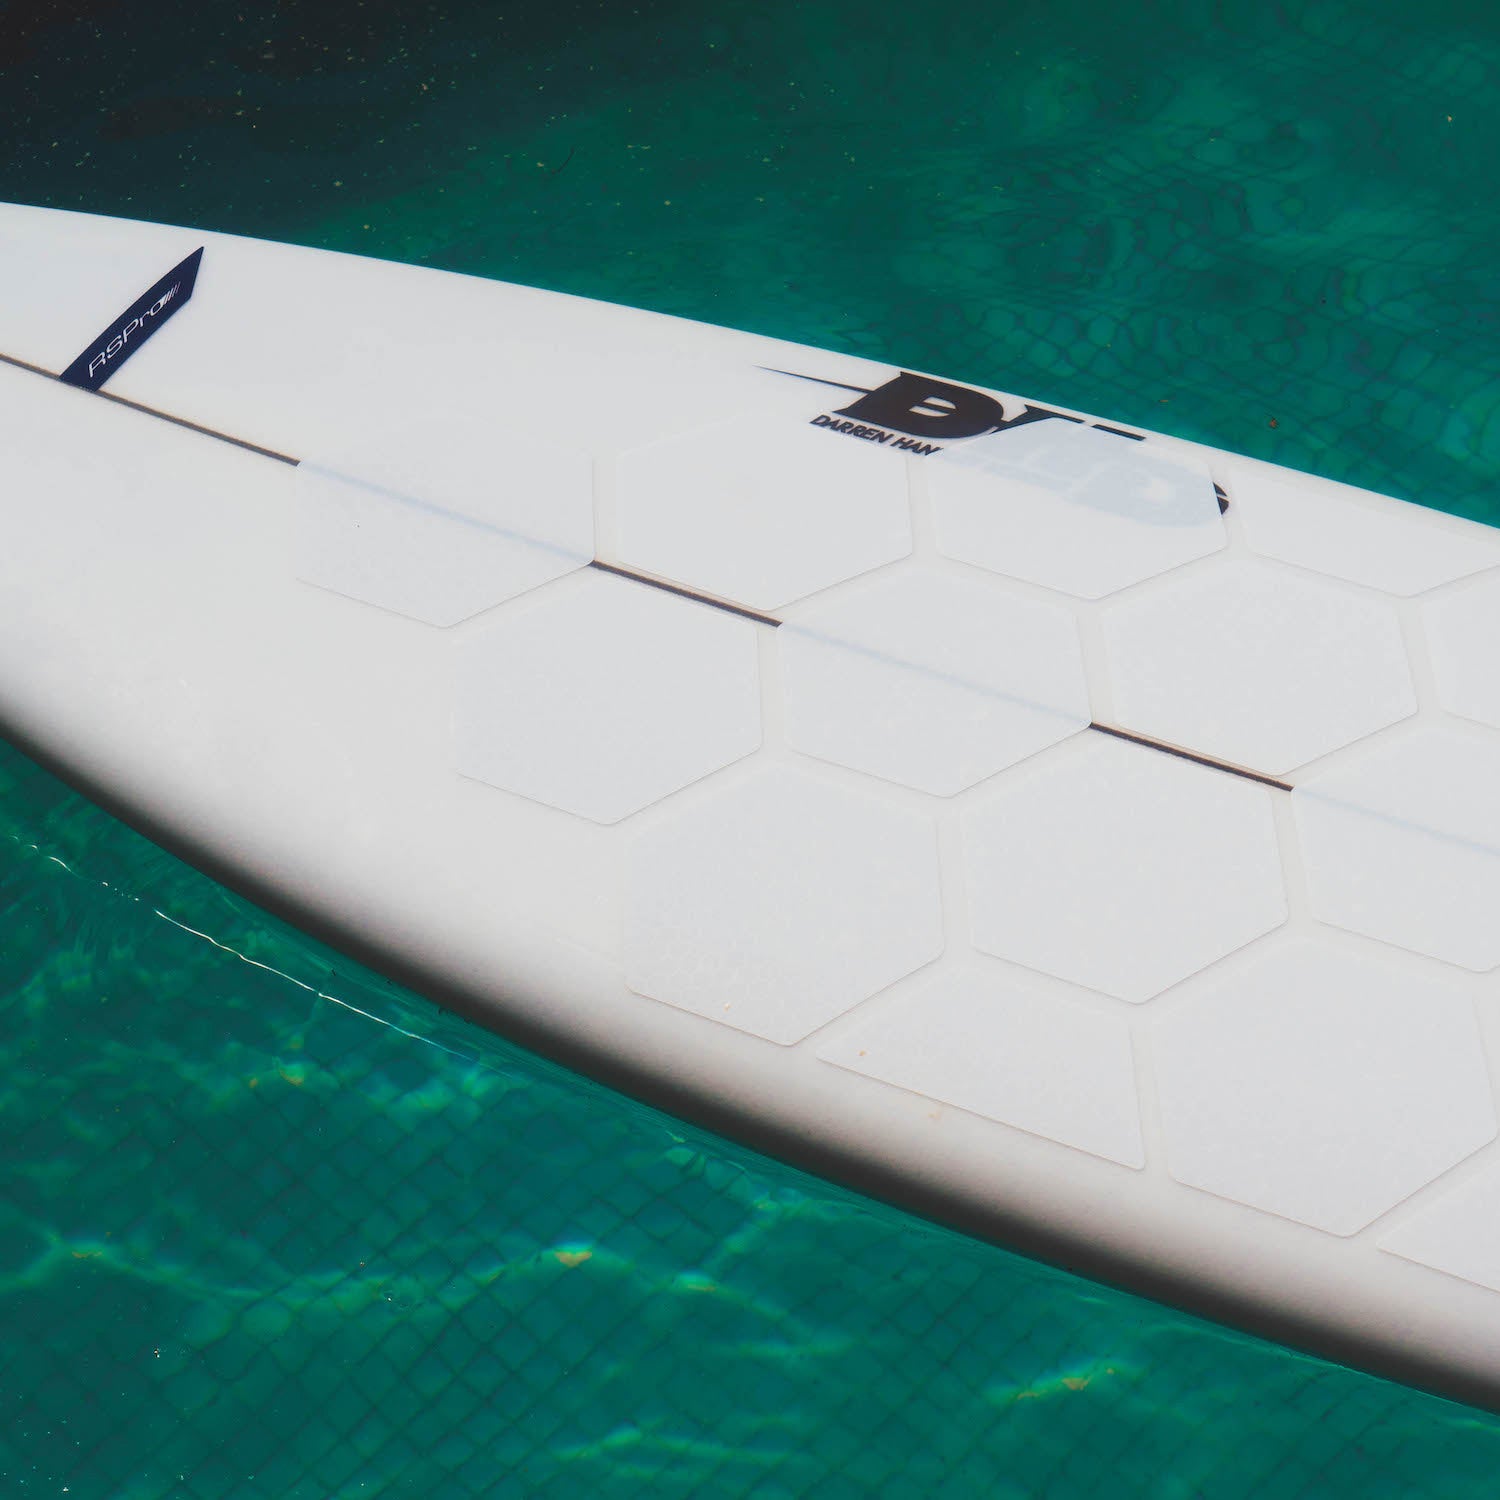 Perspektivische Detailansicht der RSPro Hexa Traction in Weiß auf einem Surfboard im Pool.